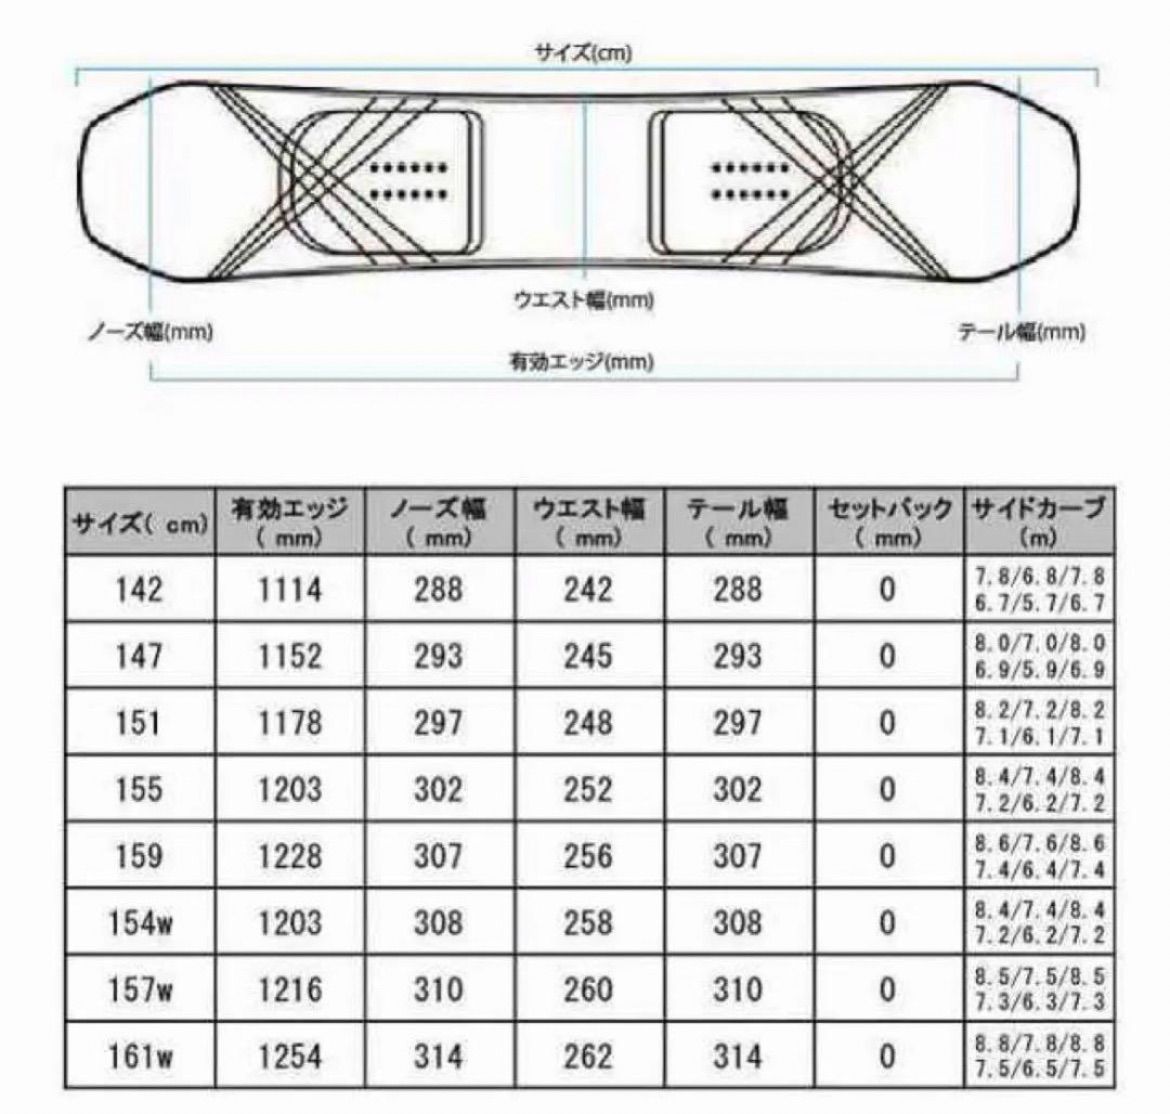 【新品_即日発送】22-23 RIDE ZERO メンズスノーボード 155cm